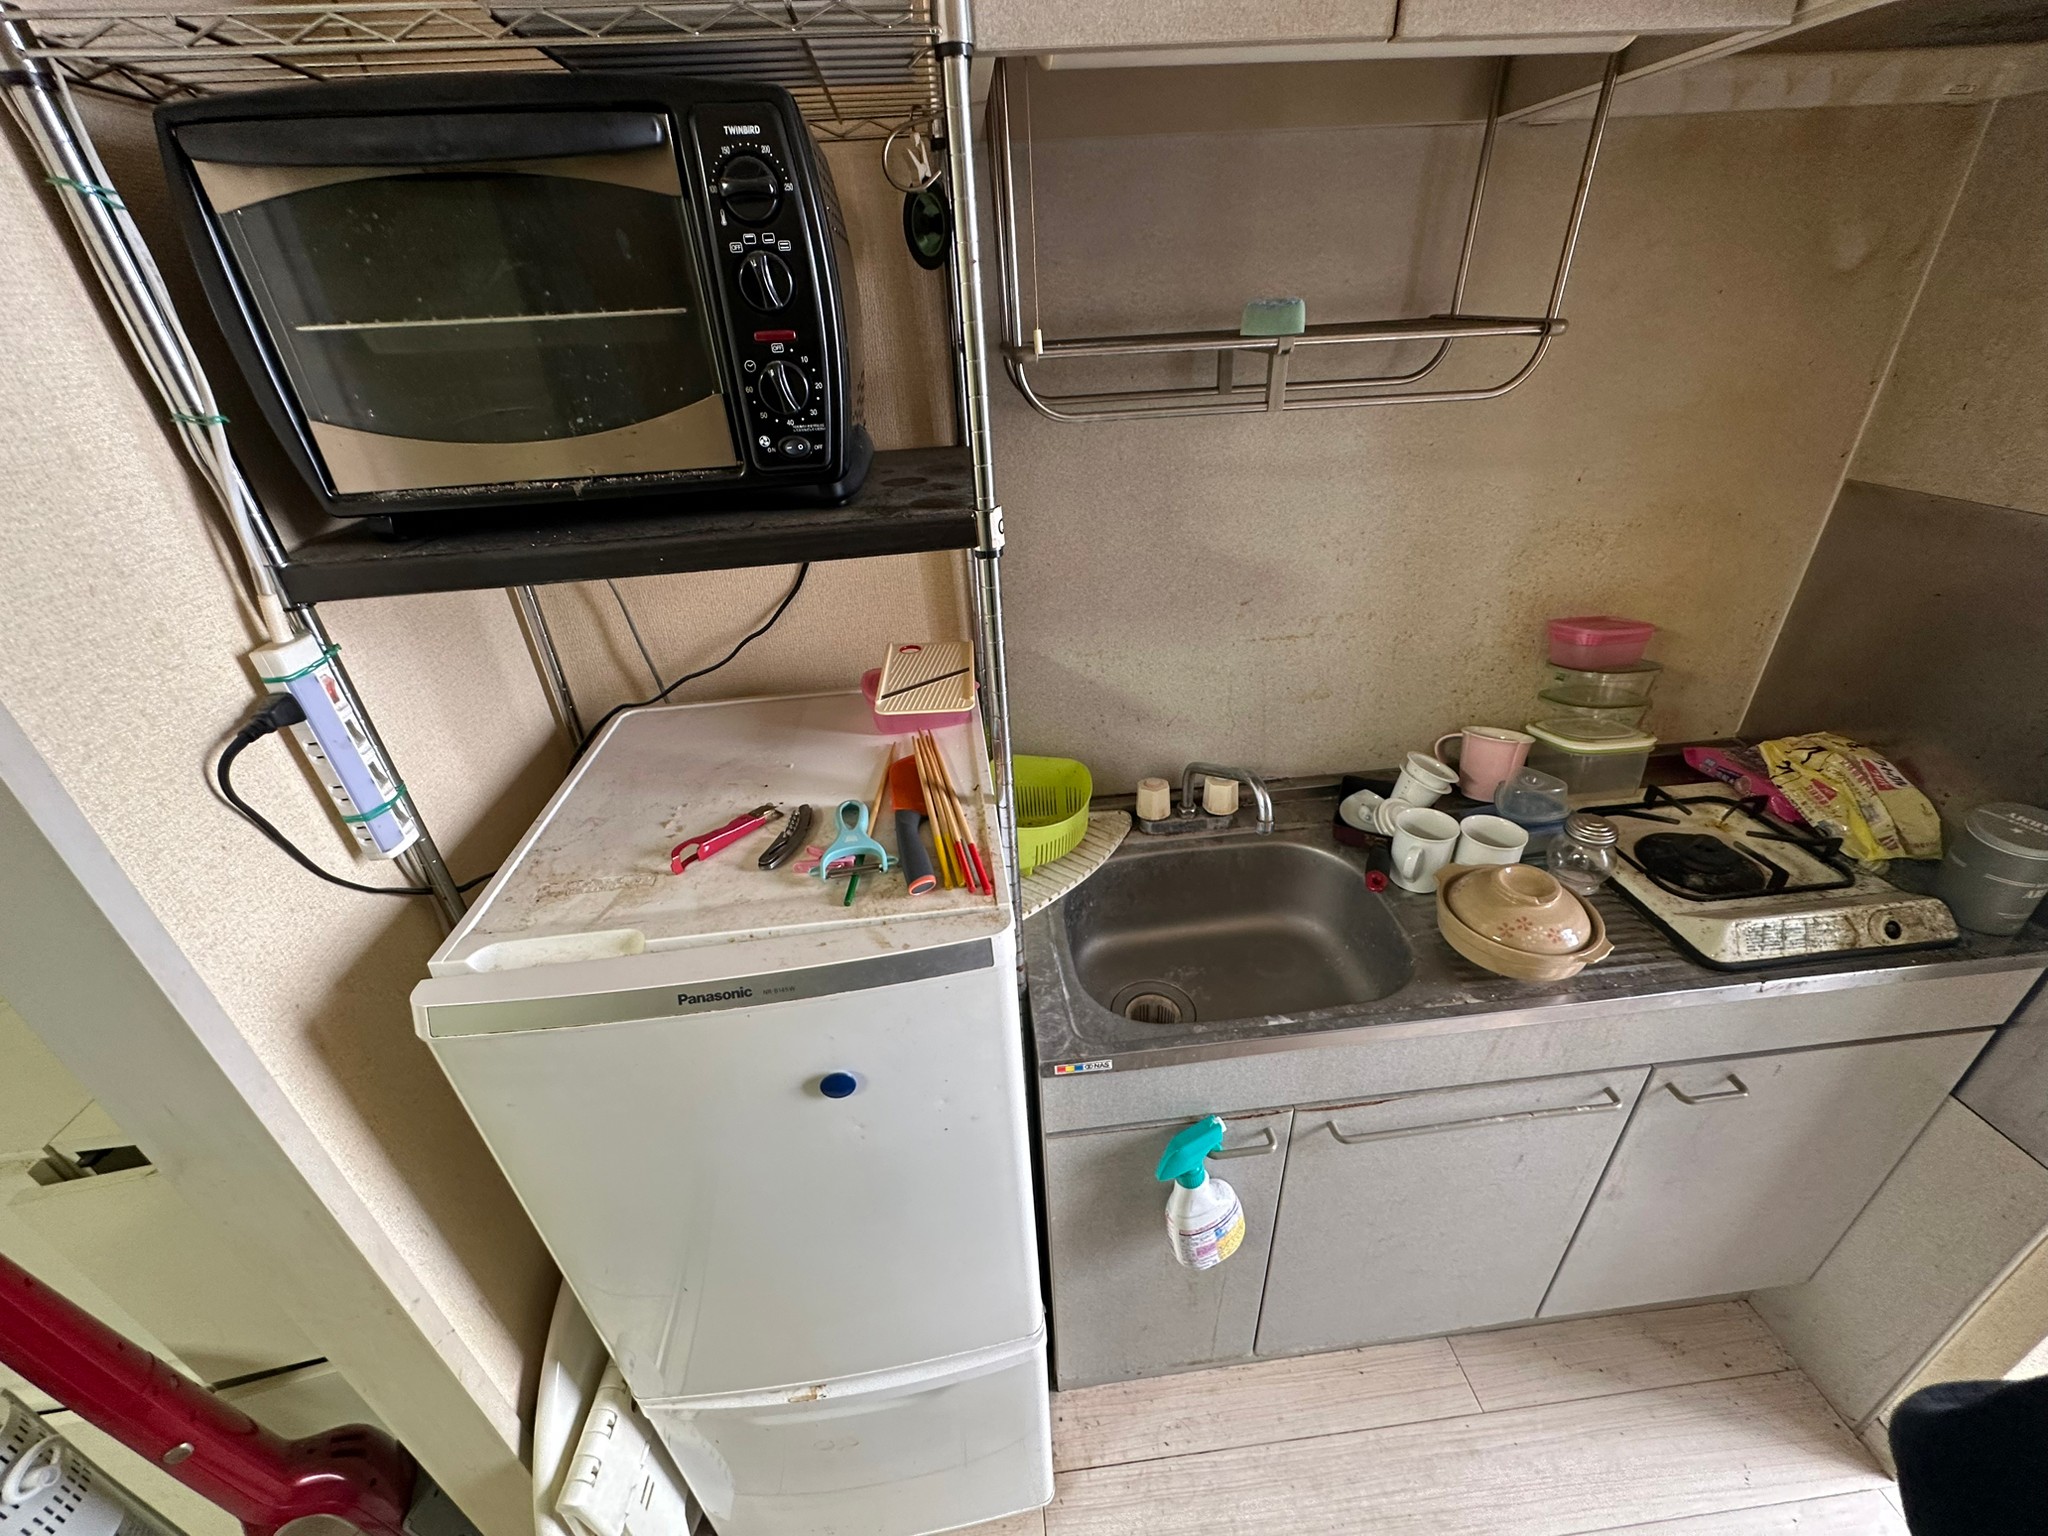 冷蔵庫、電子レンジ、ラック、食器類多数、掃除機の回収前の状態